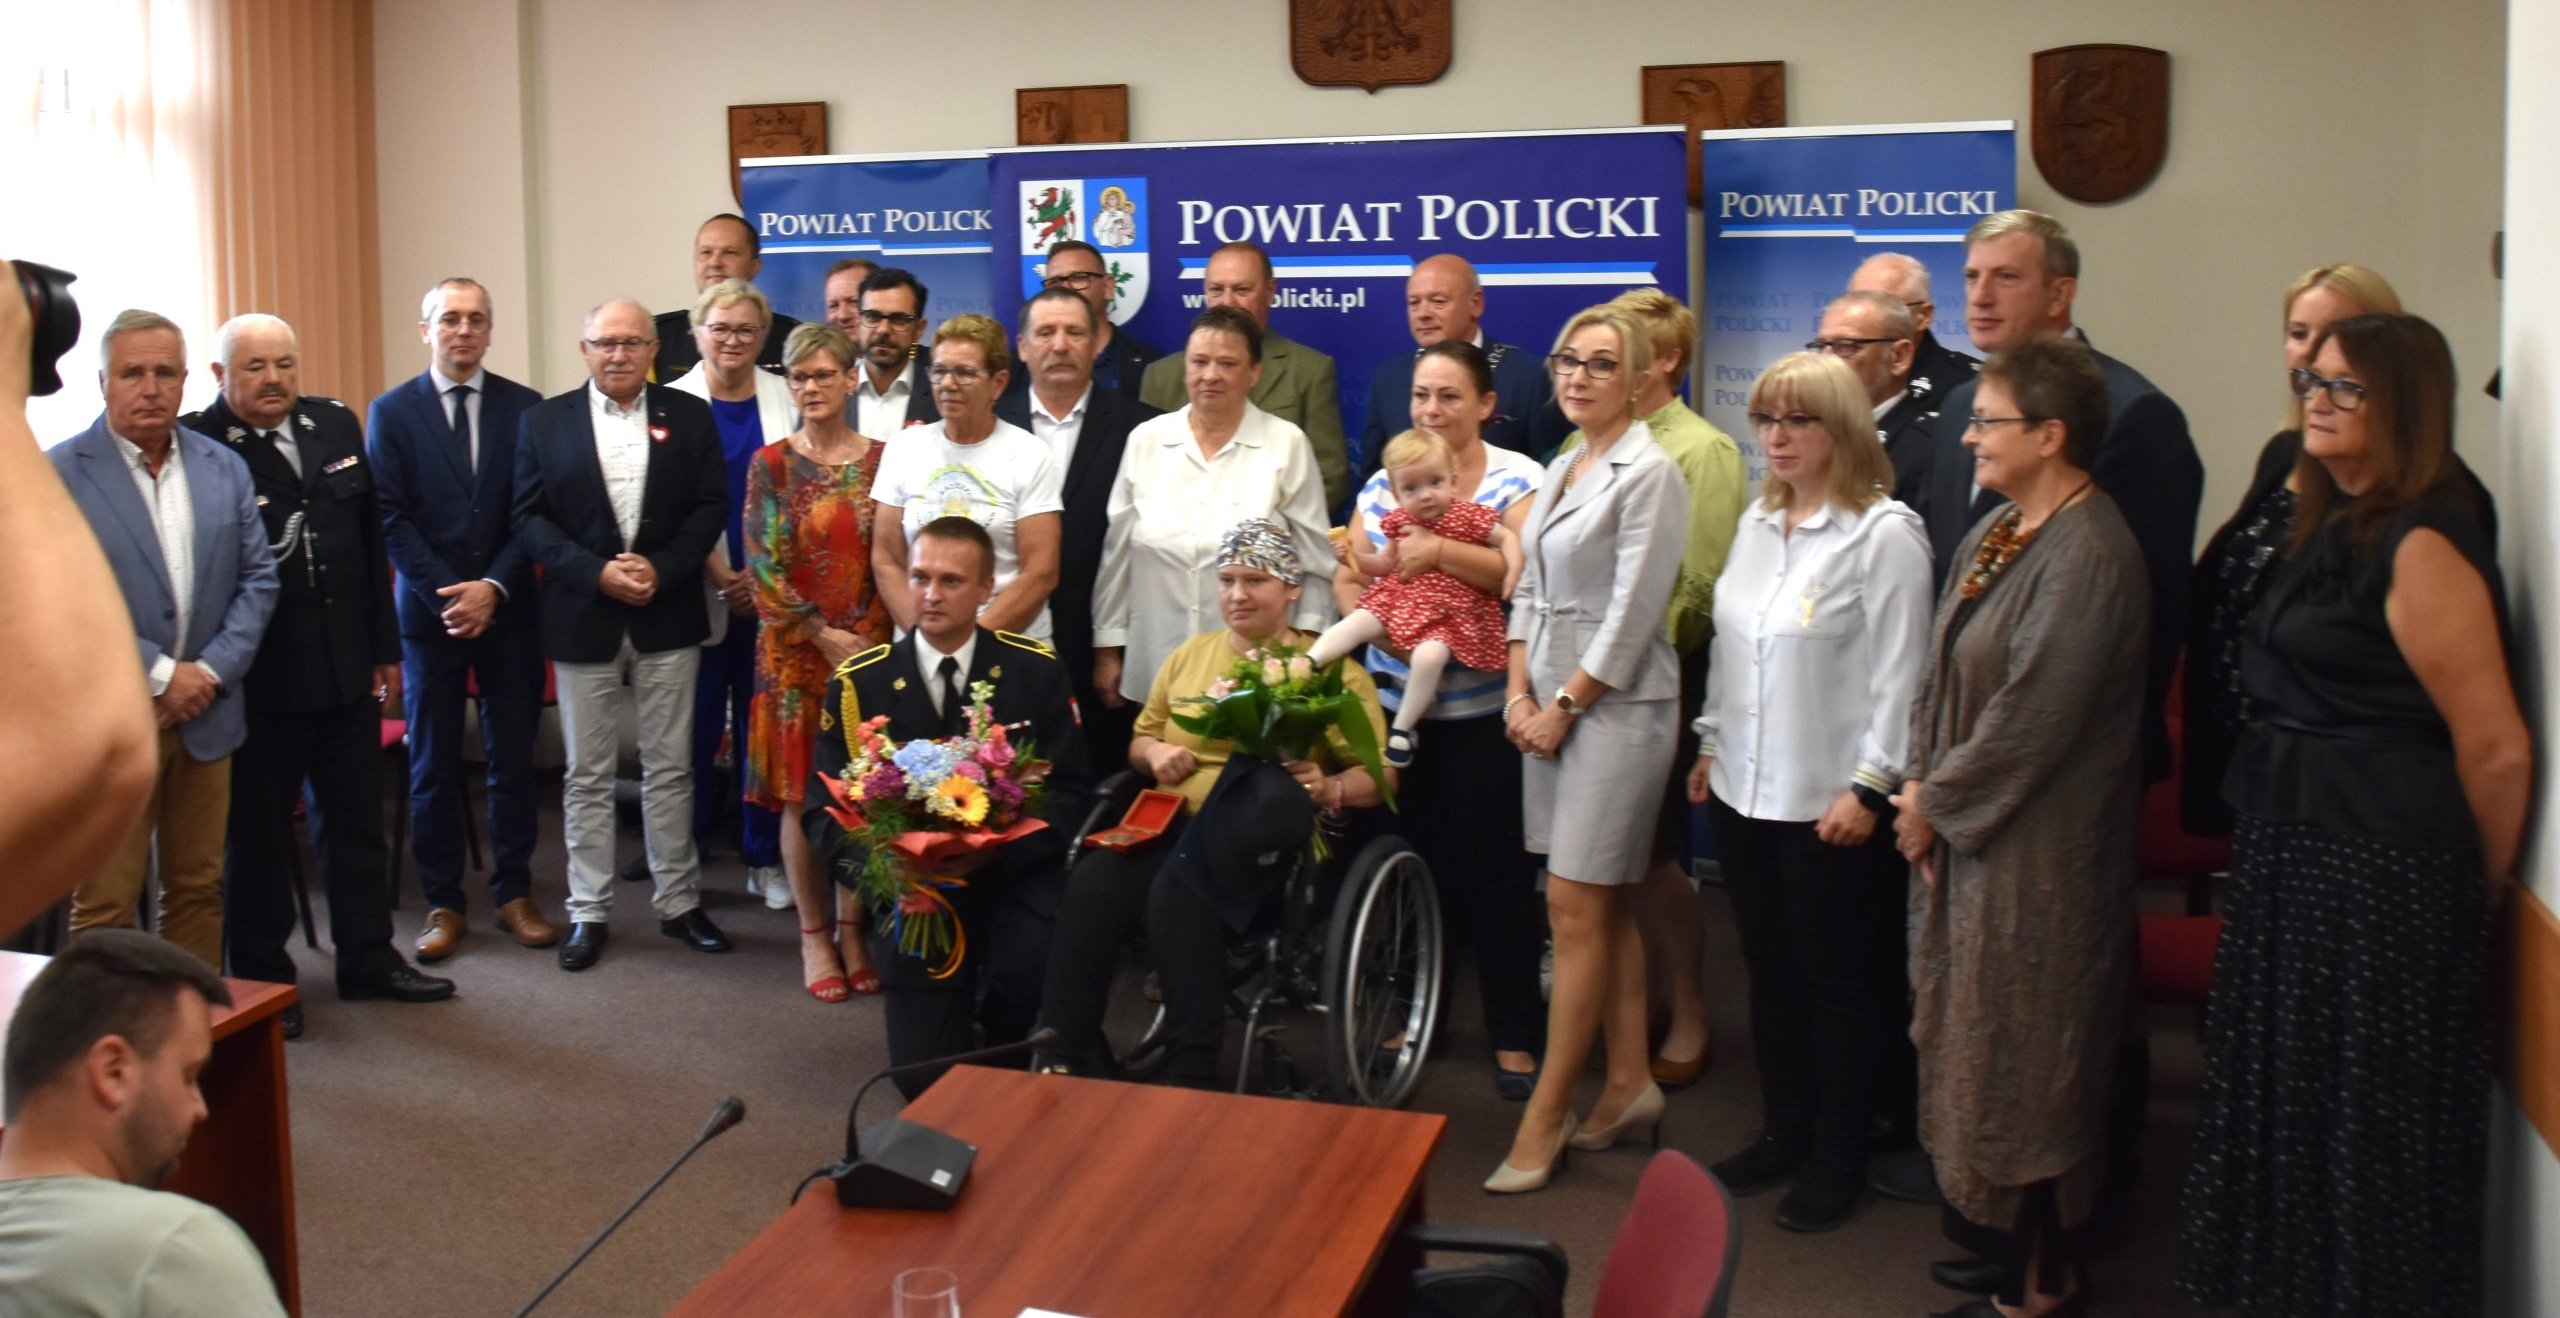 Zdjęcie grupowe z zaproszonym gościem na tle ścianki Powiat Polickiego.